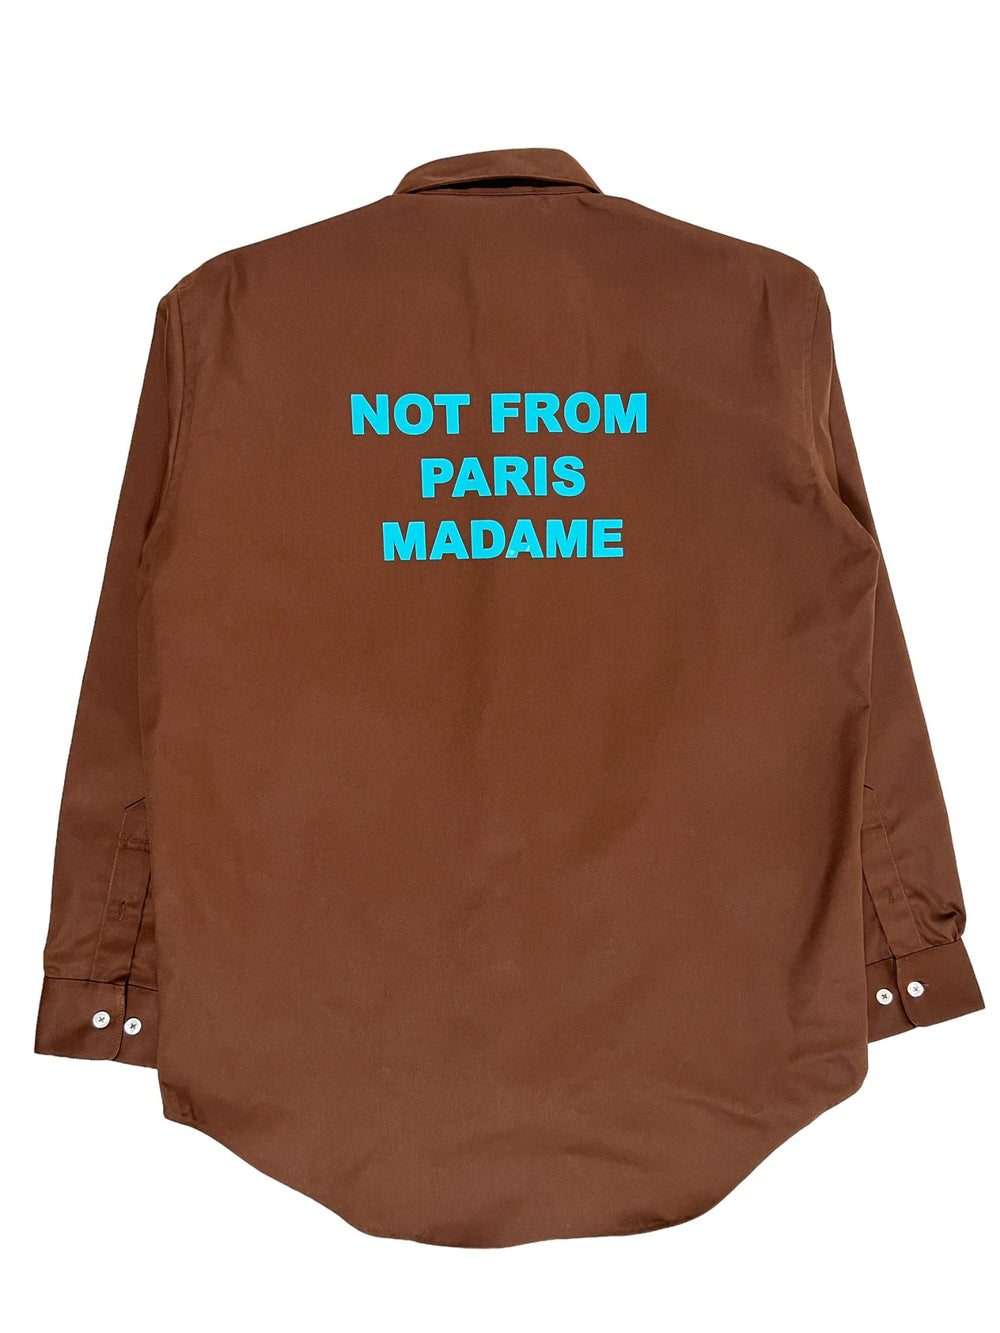 A DROLE DE MONSIEUR button down shirt that says not from paris madame.